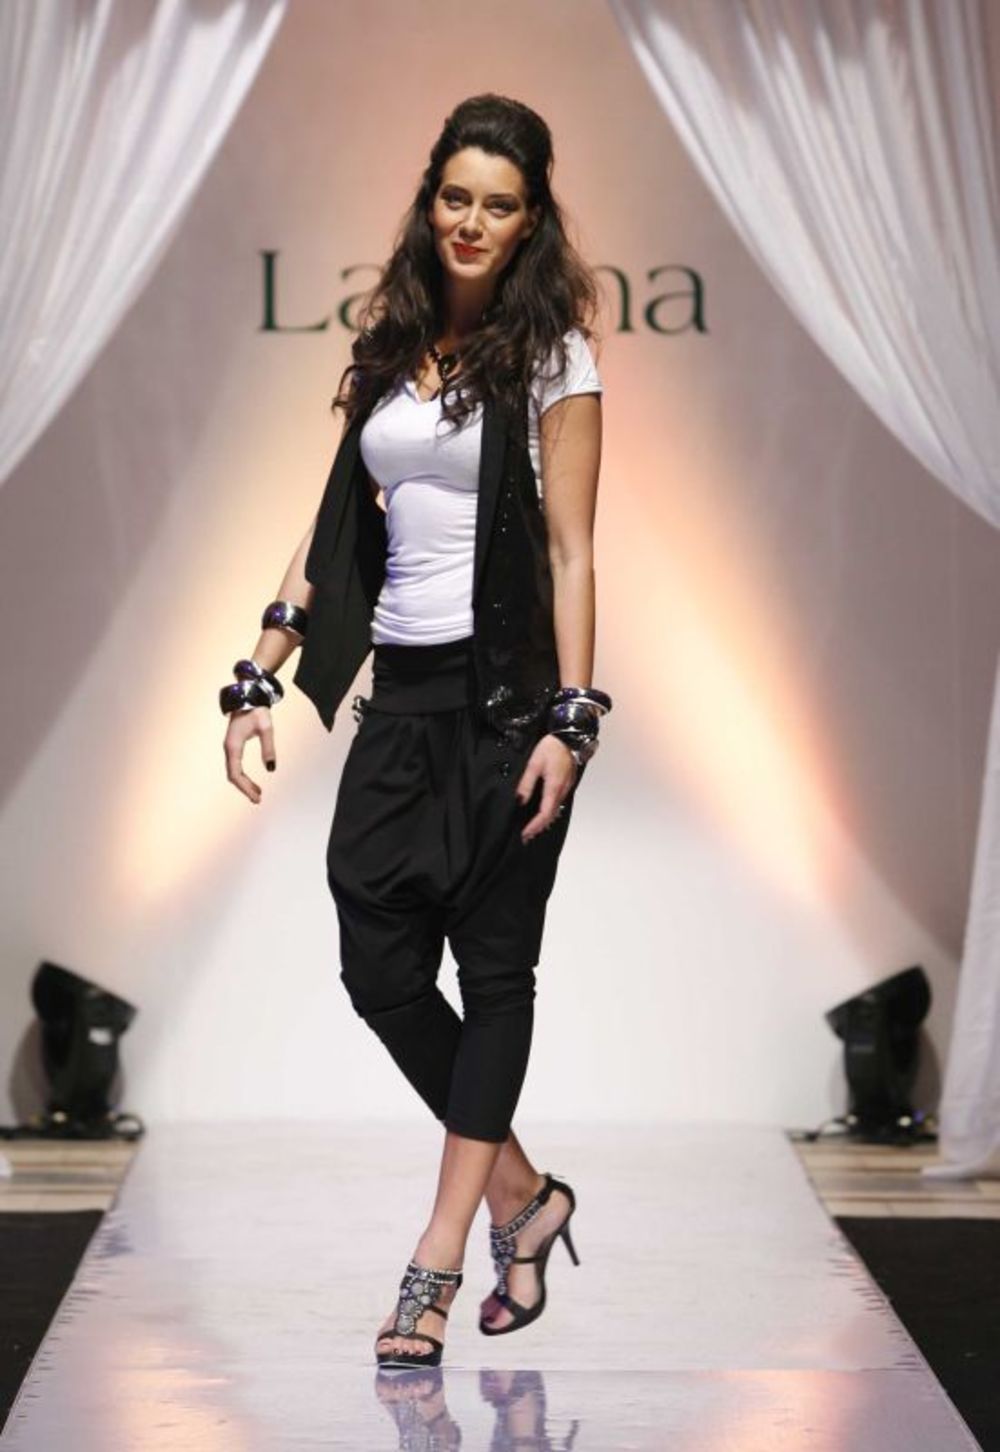 Izdavačka kuća Laguna, u saradnji sa knjižarskim lancem Delfi, pojavila se prvi put na jednoj modnoj manifestaciji u sklopu 16. Jacobs Fashion Selectiona, a tim povodom mnoge poznate dame prošetale su modnom pistom u SKC-u